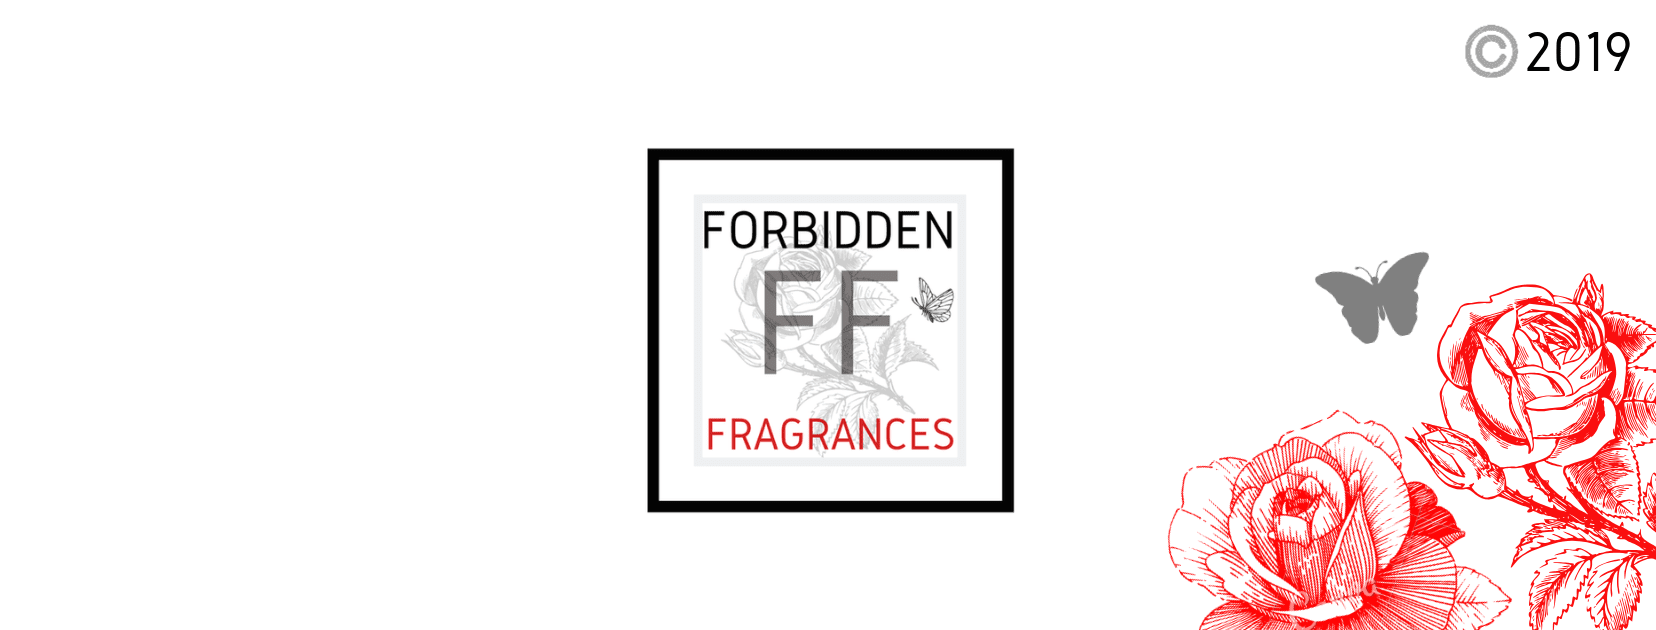 Forbidden Fragrances